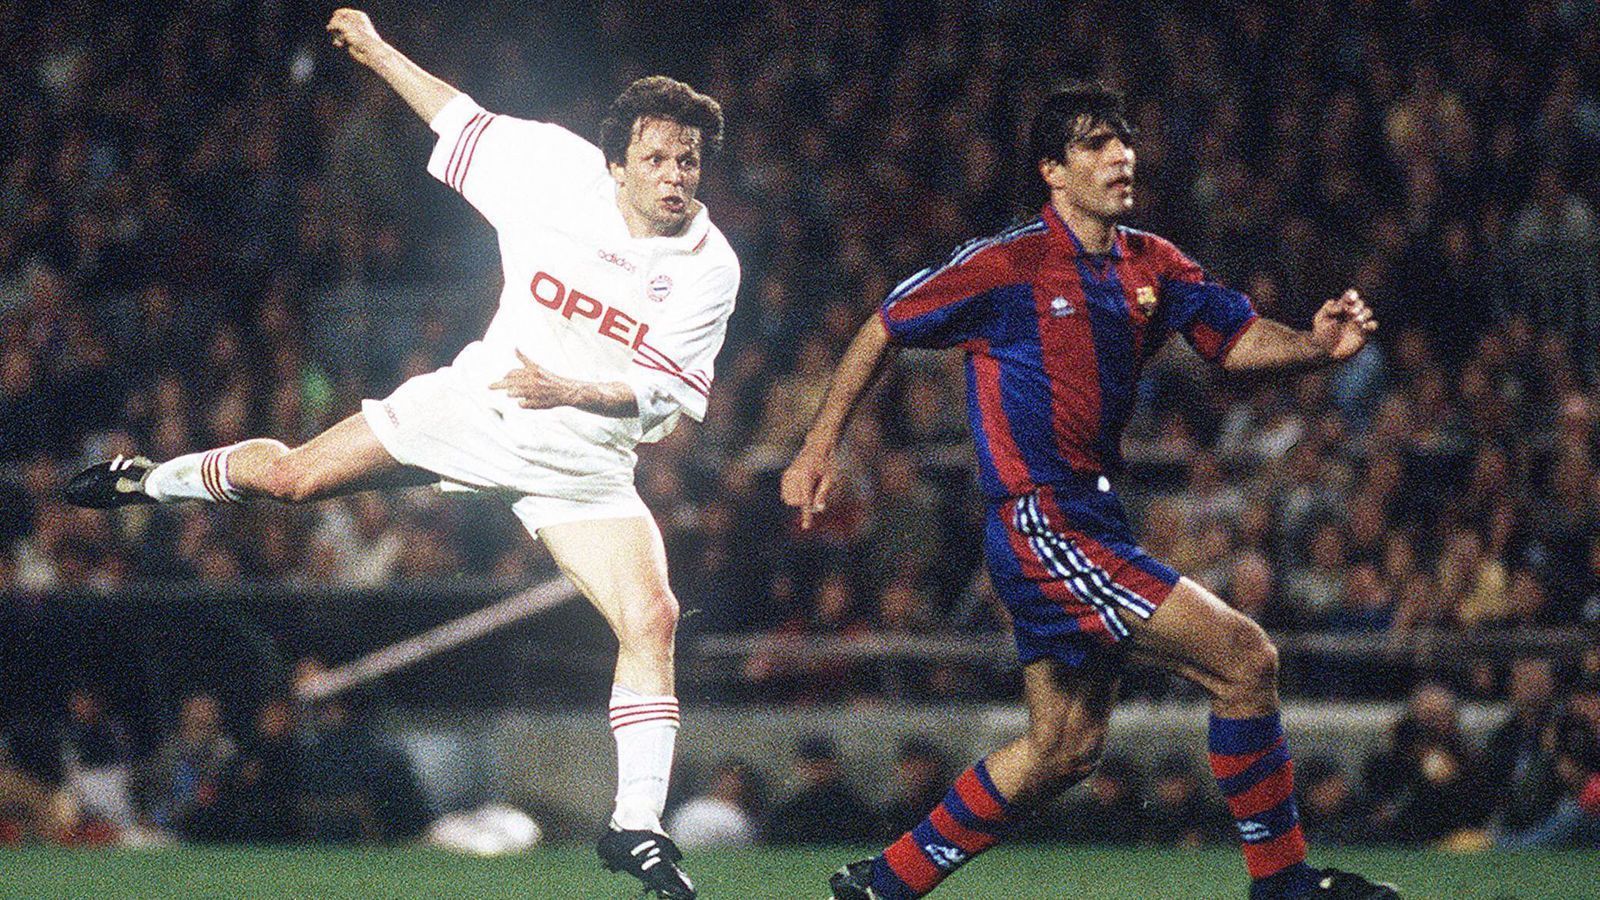 
                <strong>FC Barcelona - FC Bayern (UEFA-Cup 1995/96)</strong><br>
                ... kam es in Barcelona zum Rückspiel und dabei behielten die Bayern mit 2:1 die Oberhand. Markus Babbel und erneut Marcel Witeczek (li.) brachten den deutschen Rekordmeister um Trainer Otto Rehhagel durch ihre Treffer auf Finalkurs. Daran konnte auch der späte Anschlusstreffer von Ivan De La Pena nichts mehr ändern. Knapp einen Monat nach dem Sieg bei Barca holten die Münchner (nach dem Rauswurf von Rehhagel) unter Interimscoach Franz Beckenbauer durch zwei Erfolge in den Endspielen gegen Girondins Bordeaux den UEFA-Cup an die Säbener Straße.
              